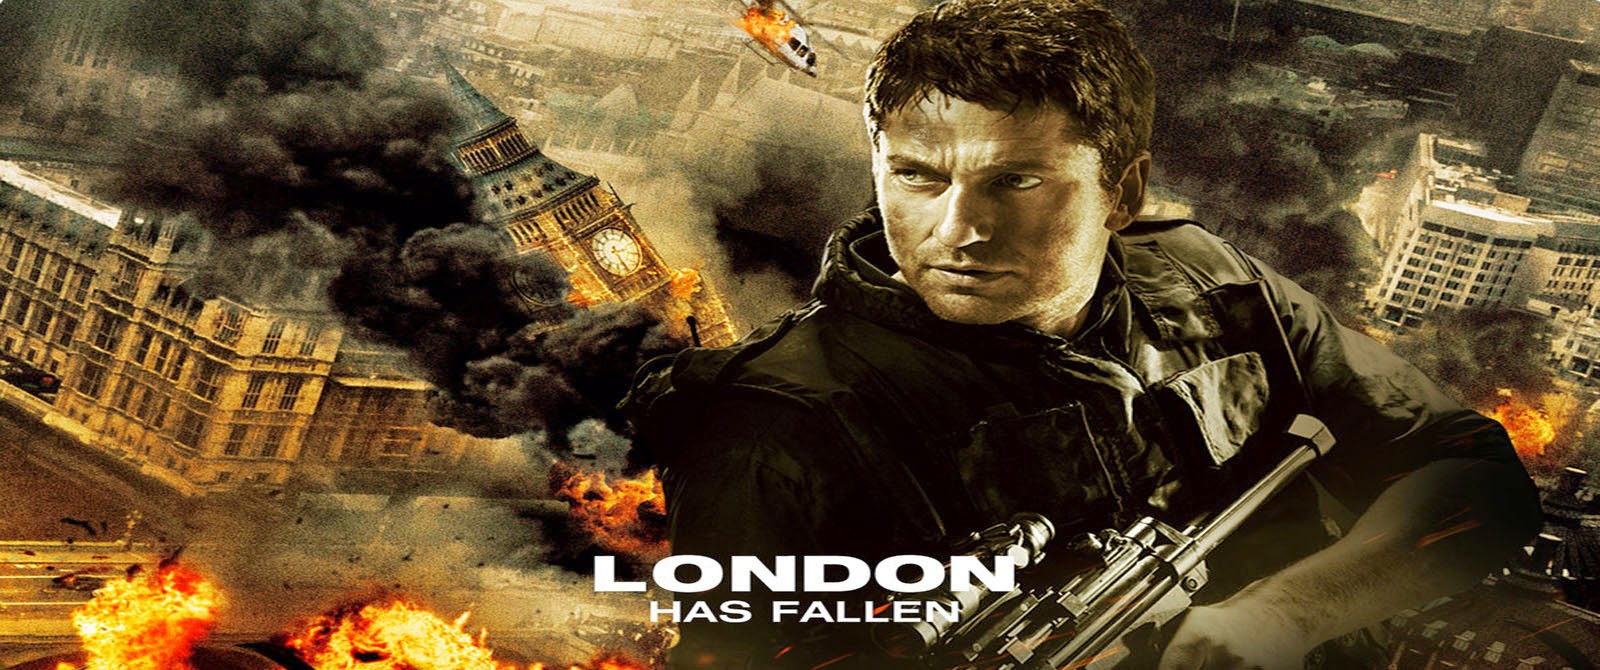 London Has Fallen (2016) free online